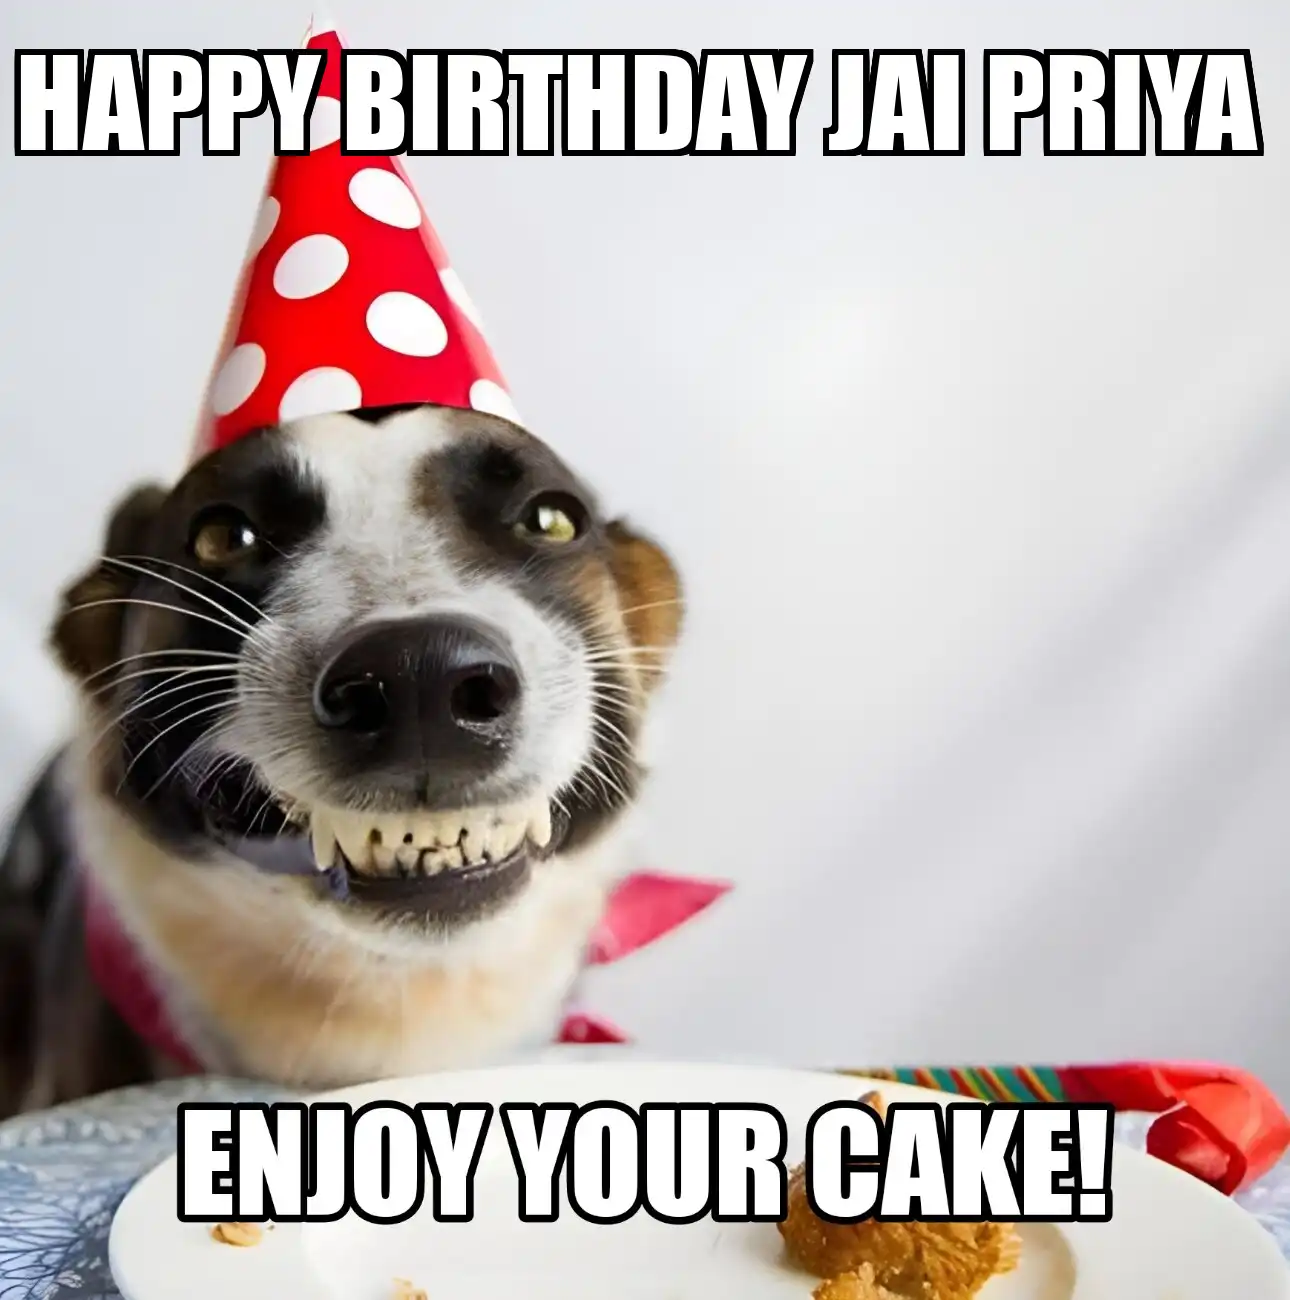 Happy Birthday Jai Priya Enjoy Your Cake Dog Meme